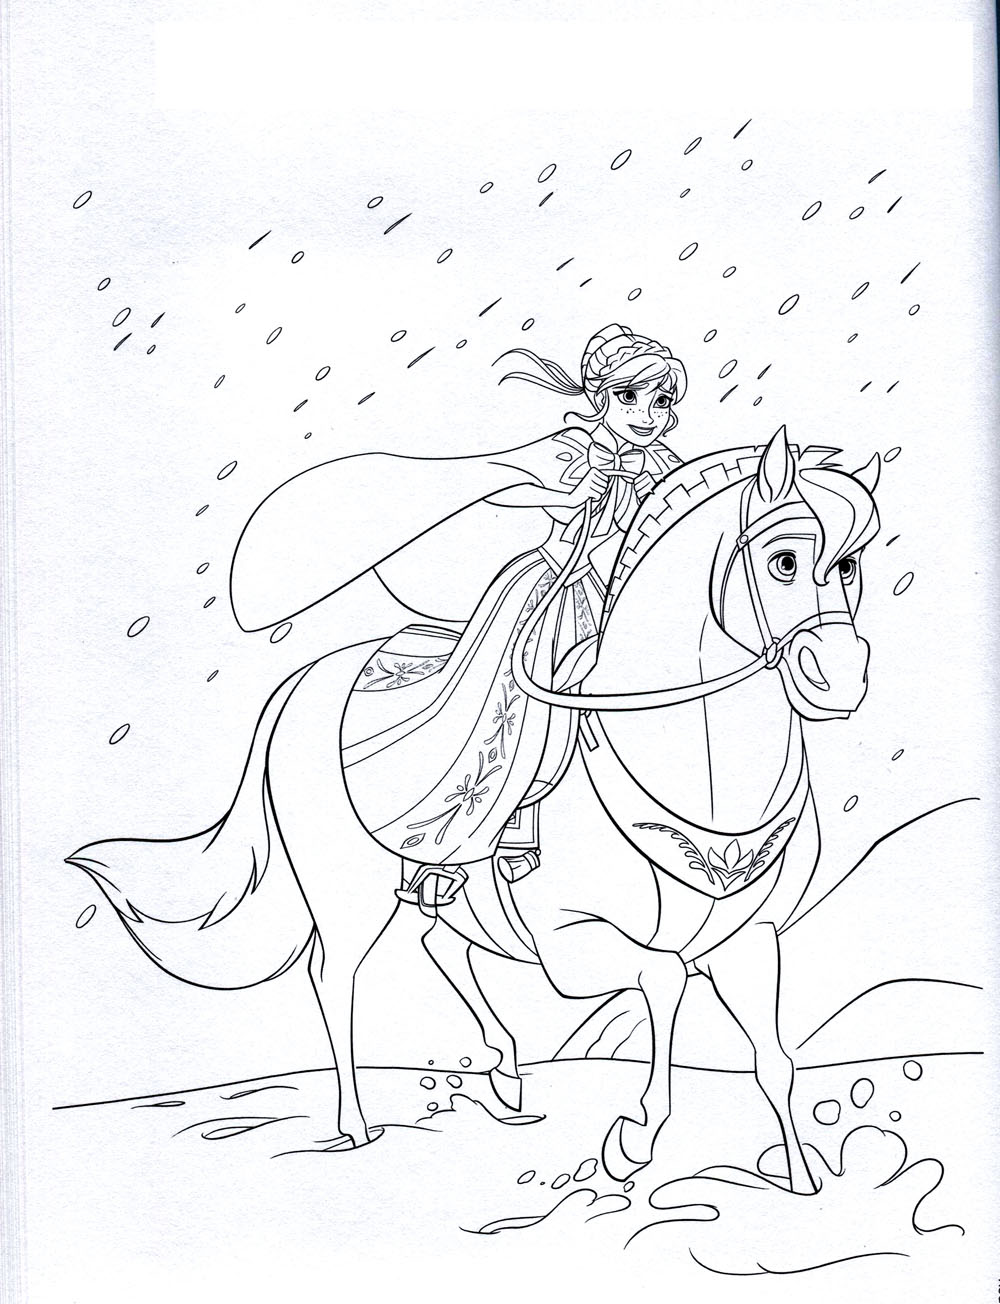 Coloriage d'Anna sur son cheval, au galop pour retrouver sa sœur dans son château glacé